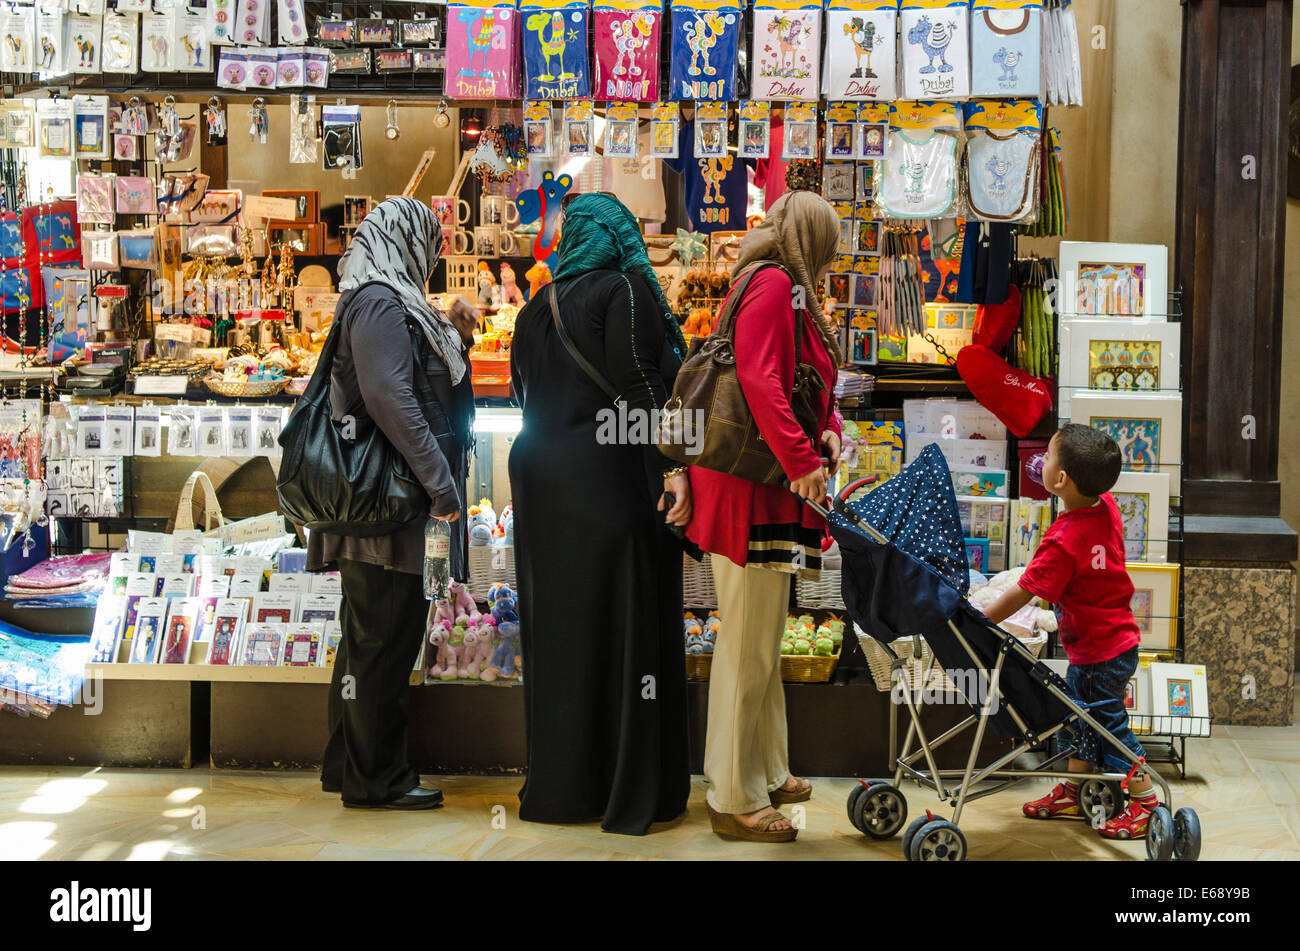 Les femmes arabes du shopping dans le marché Souk Madinat Jumeirah Dubai, Émirats arabes unis Émirats arabes unis. Banque D'Images